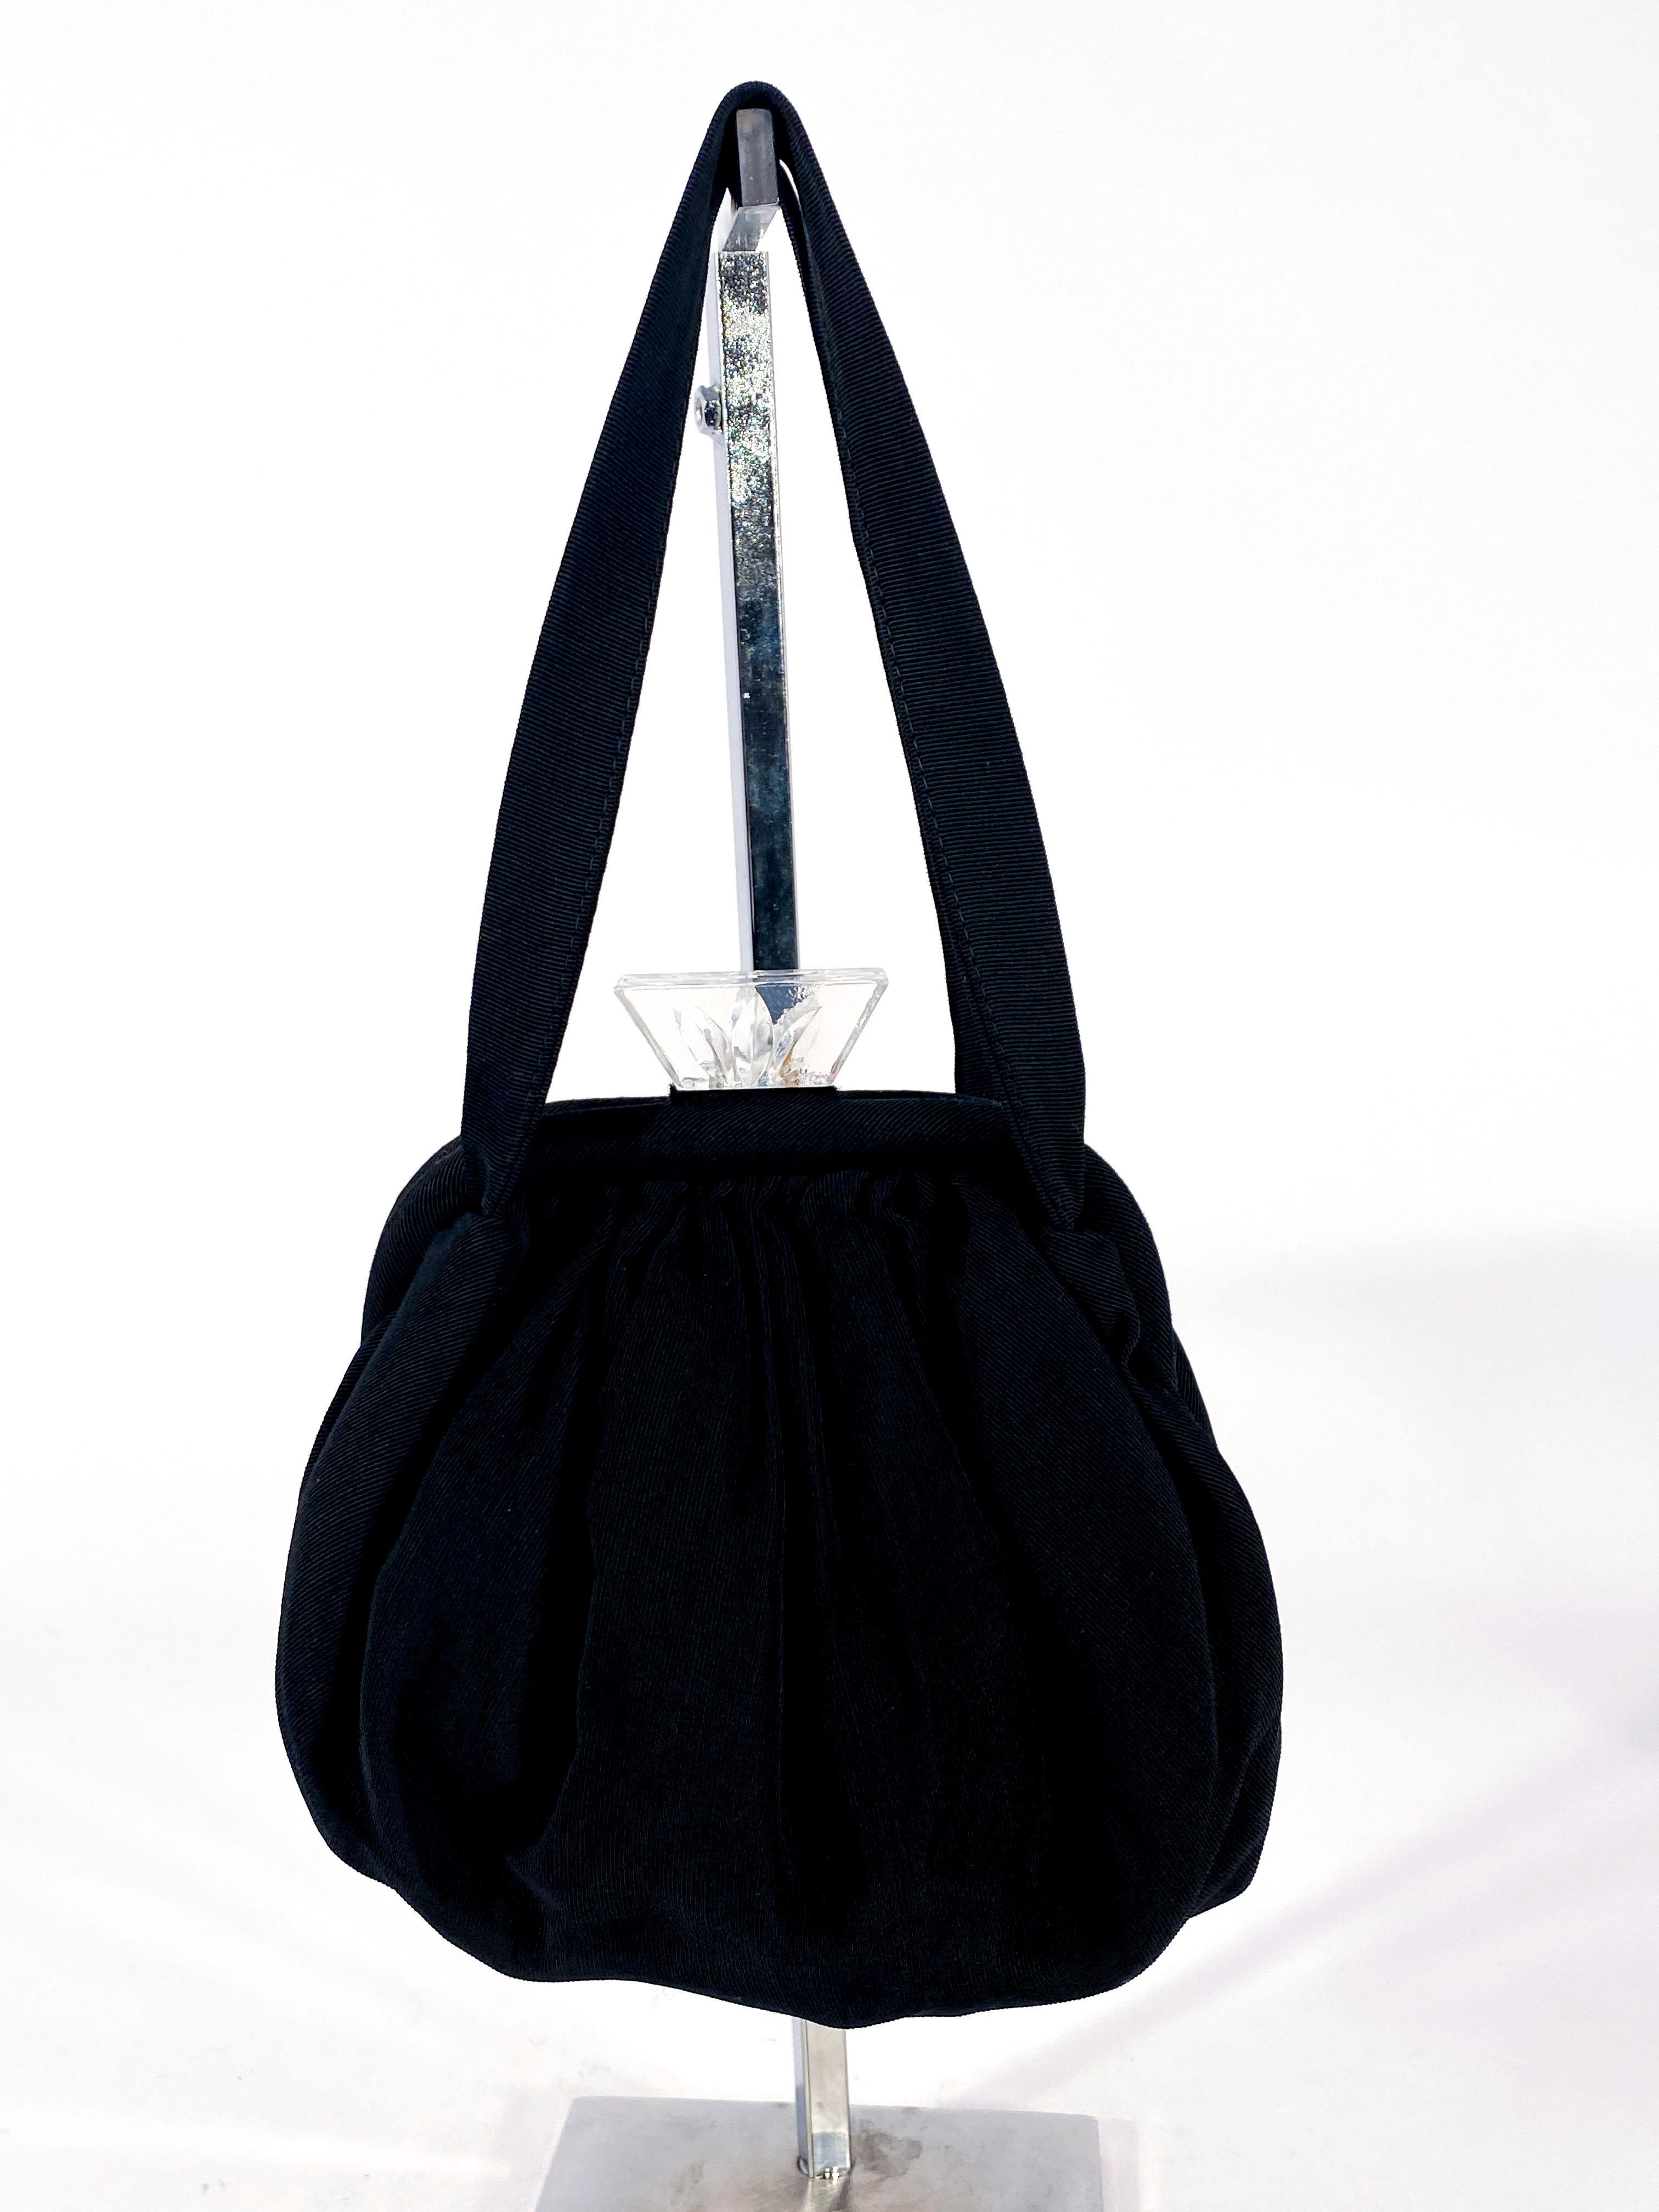 schwarze Abendhandtasche aus Twill aus den 1930er Jahren mit geschnitztem Art-Déco-Verschluss aus Lucit und Zuglasche. Das Innere des Portemonnaies ist mit schwarzem Twill gefüttert und hat ein integriertes Münzfach. Die gesamte Tasche ist mit einem